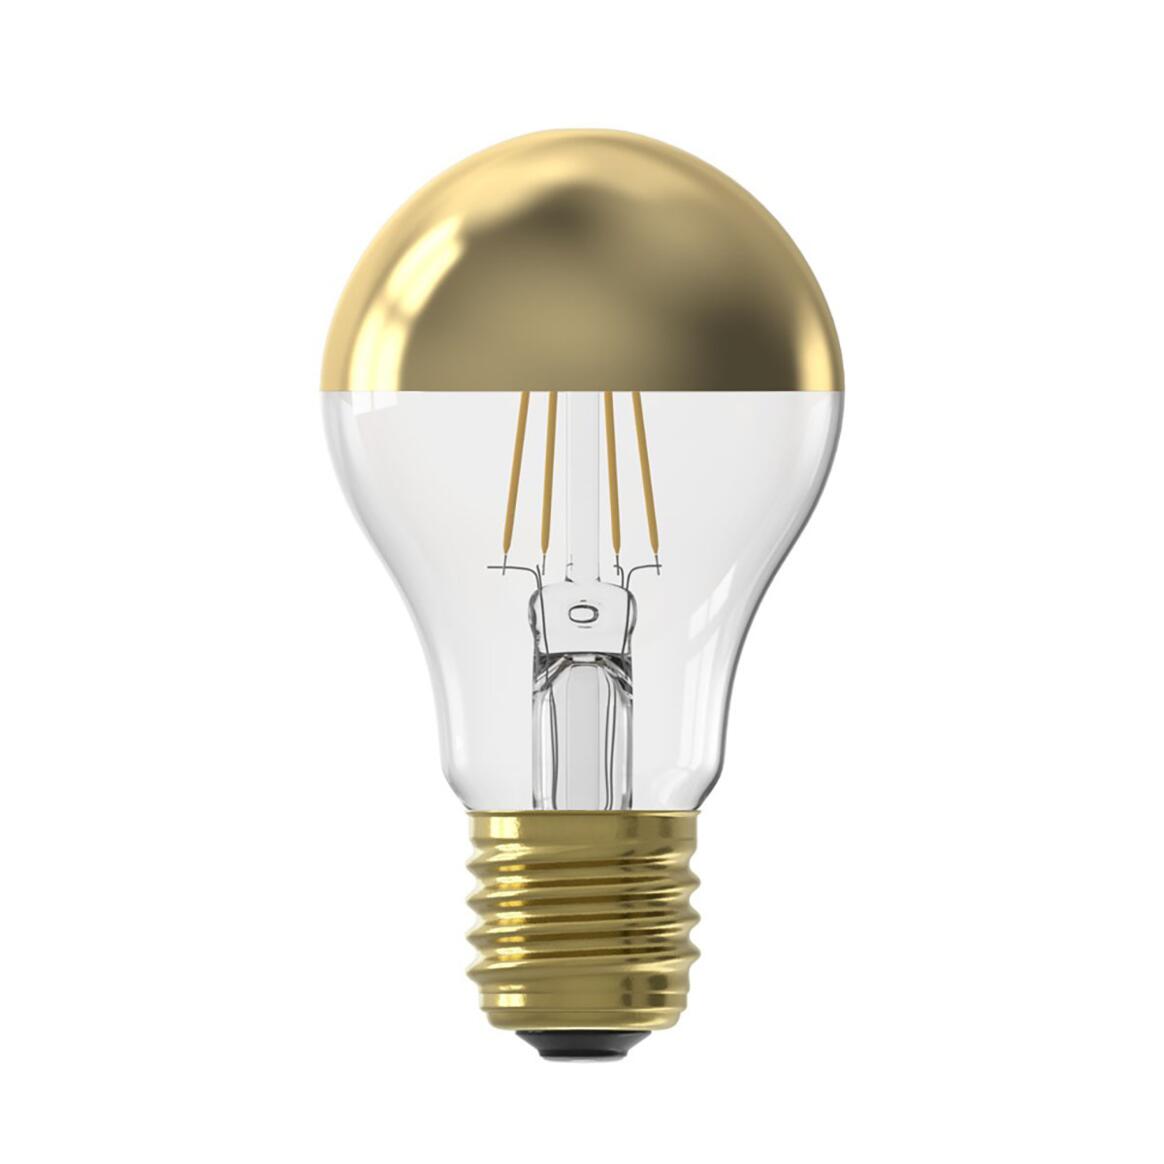 Ampoule LED à filament doré pour miroir avec variateur de lumière E27 4W 1800K 180lm 6cm main product image